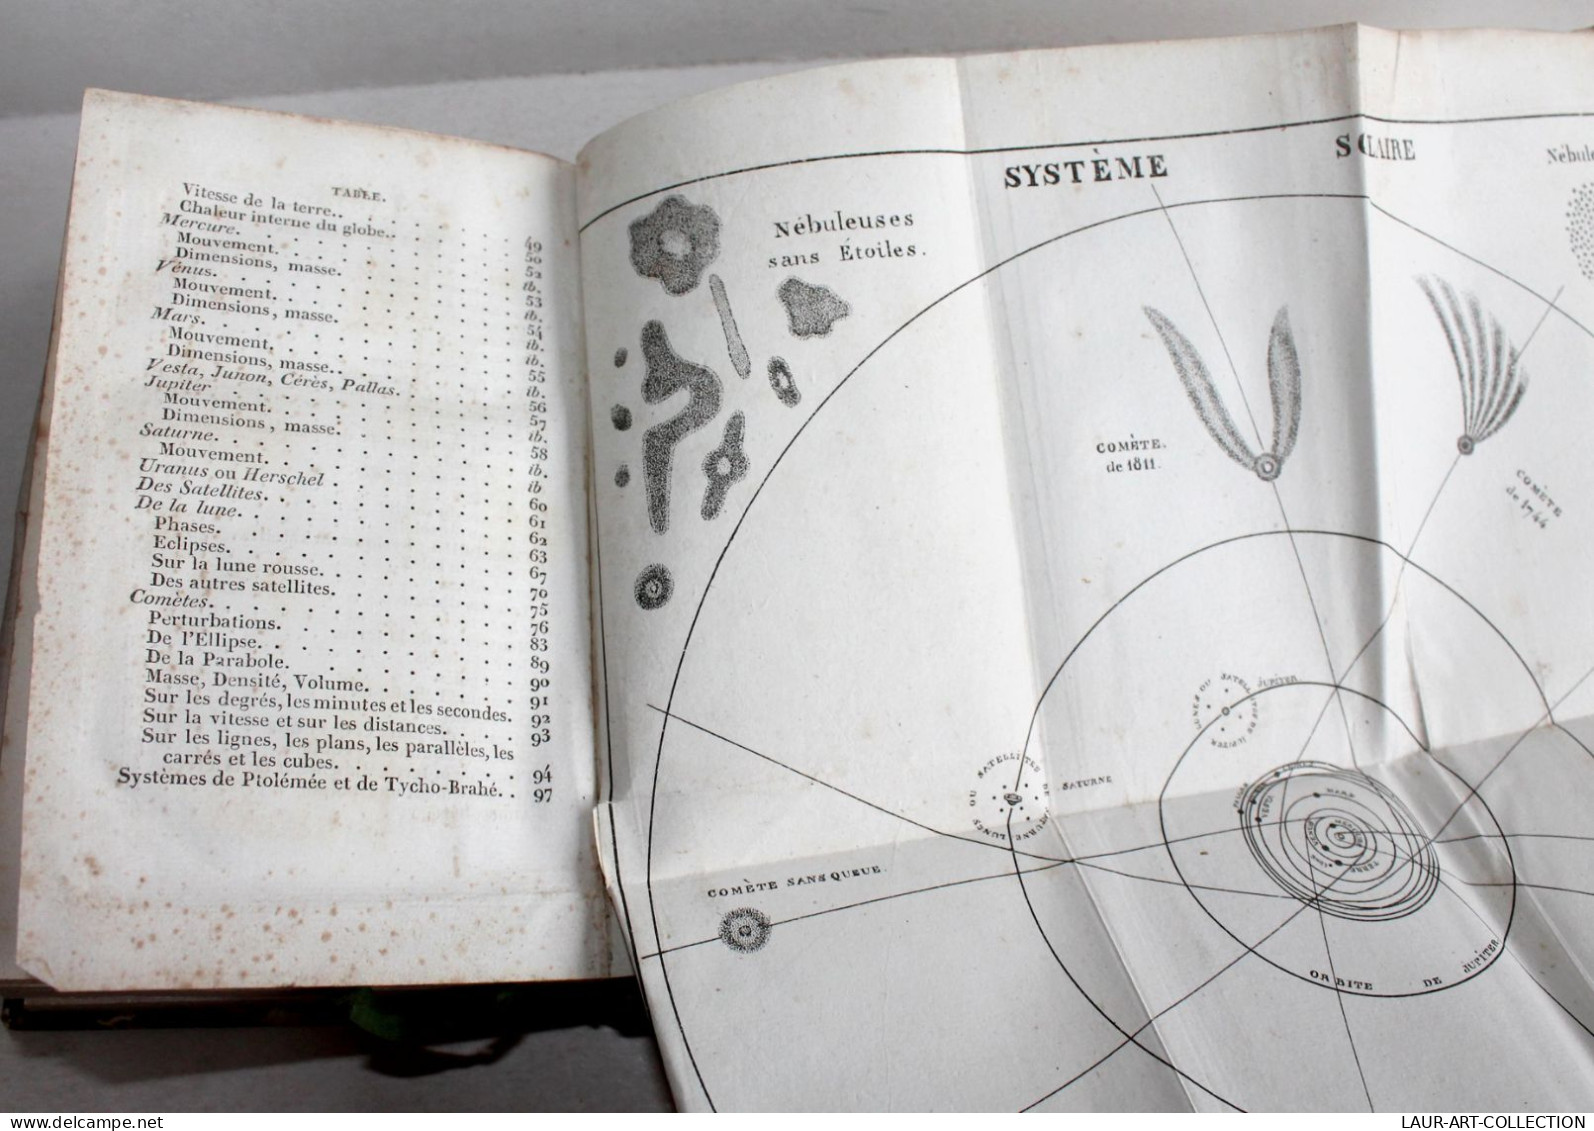 URANOGRAPHIE OU DESCRIPTION DU CIEL de GRANDSAGNE + ETOILES DOUBLES d'ARAGO 183, ASTRONOMIE ANCIEN LIVRE XIXe (2603.51)